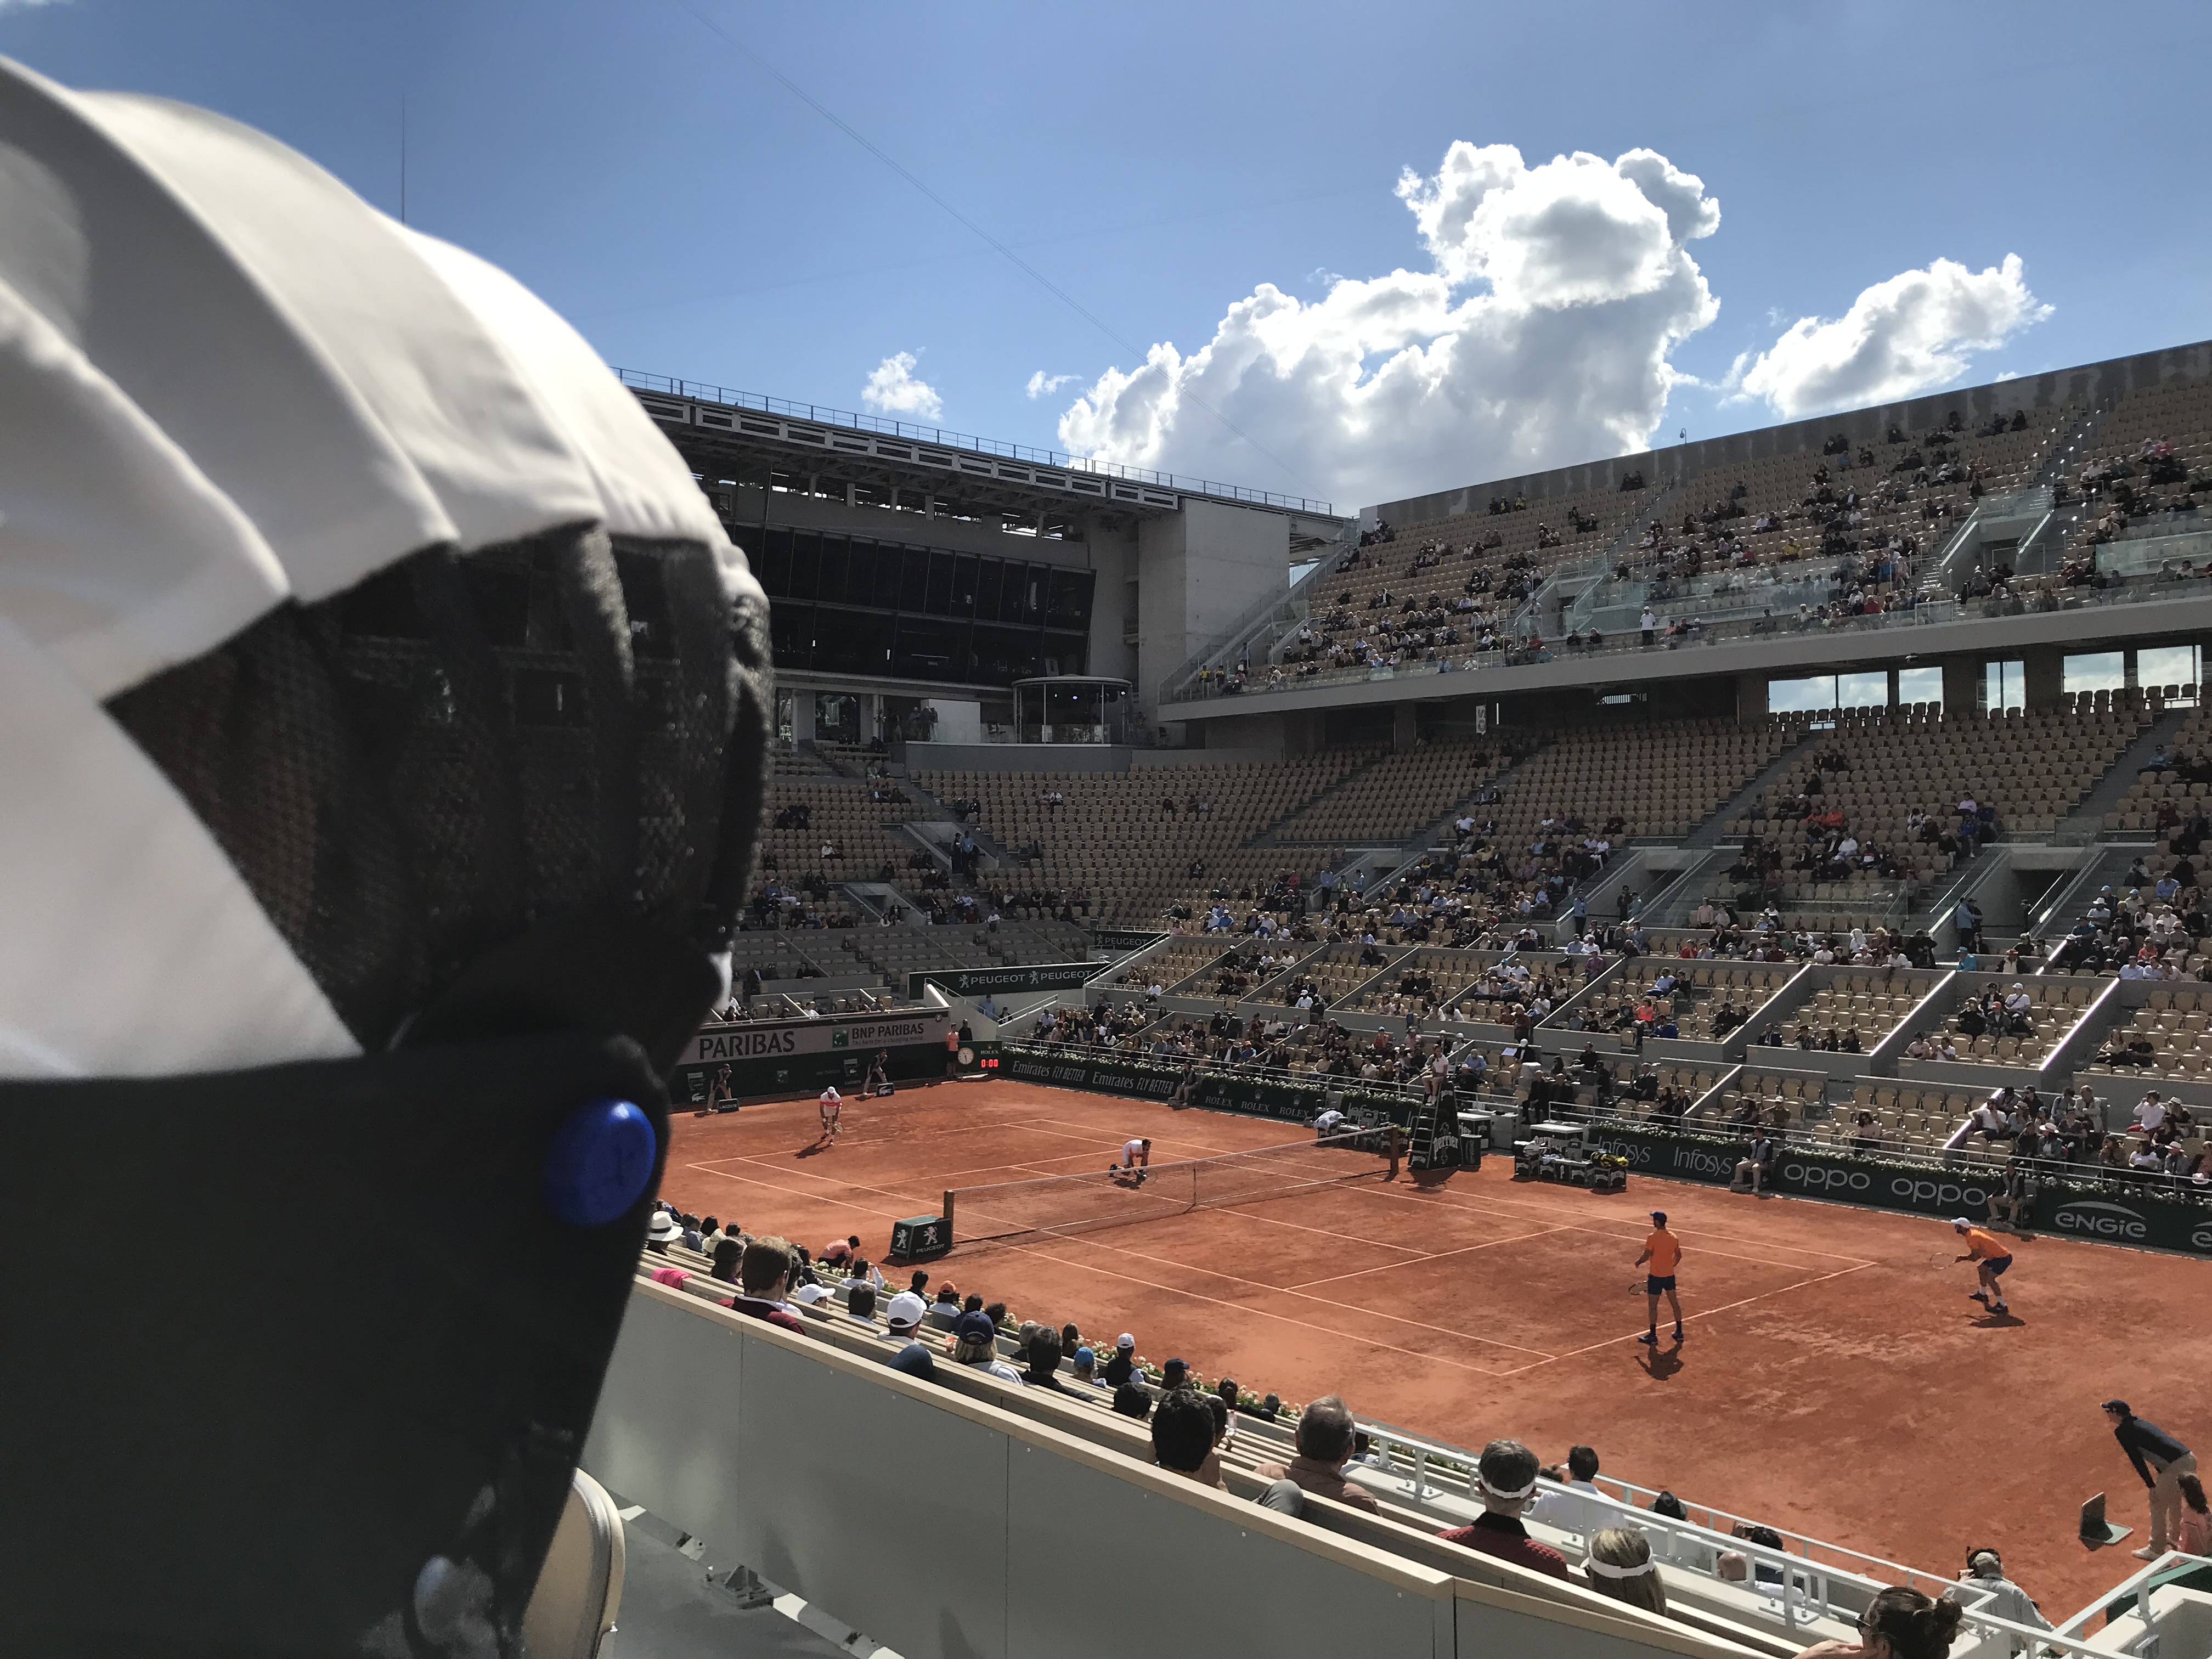 Overcap-capuche-protection-soleil-vent-pluie-spectacle-plein-air-spectateur-sport-culture-Roland-Garros-Paris